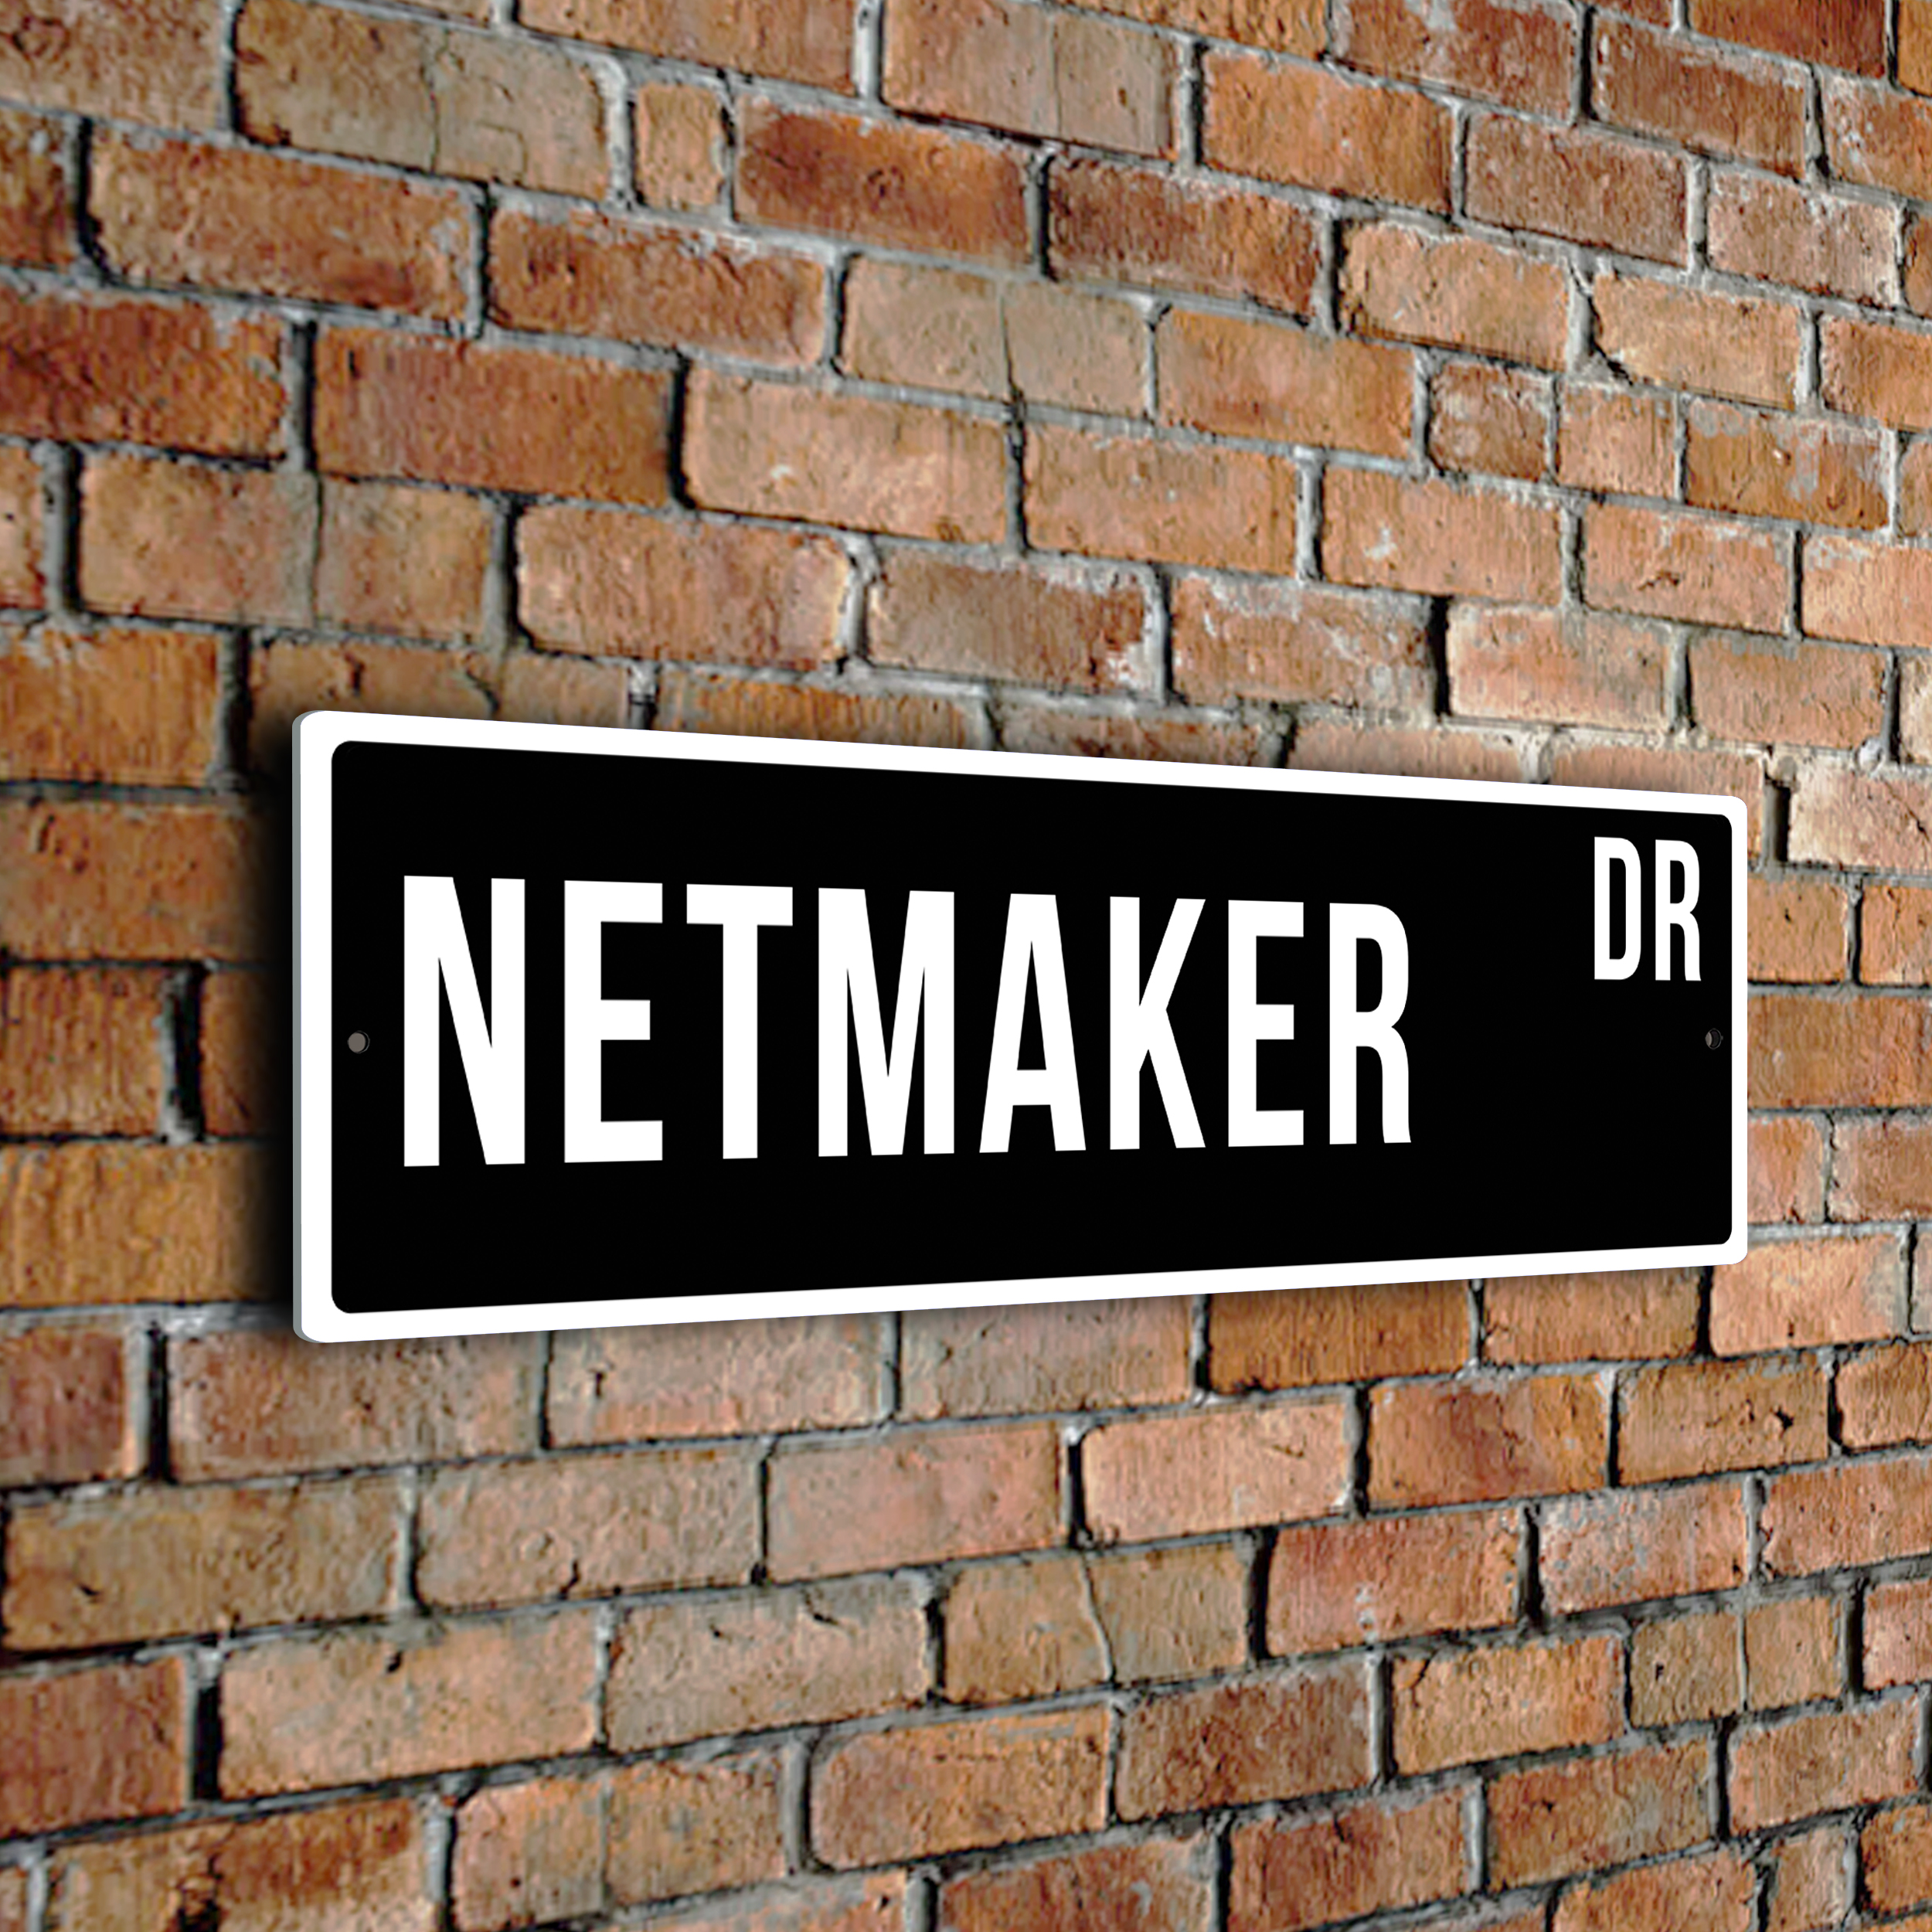 Netmaker street sign